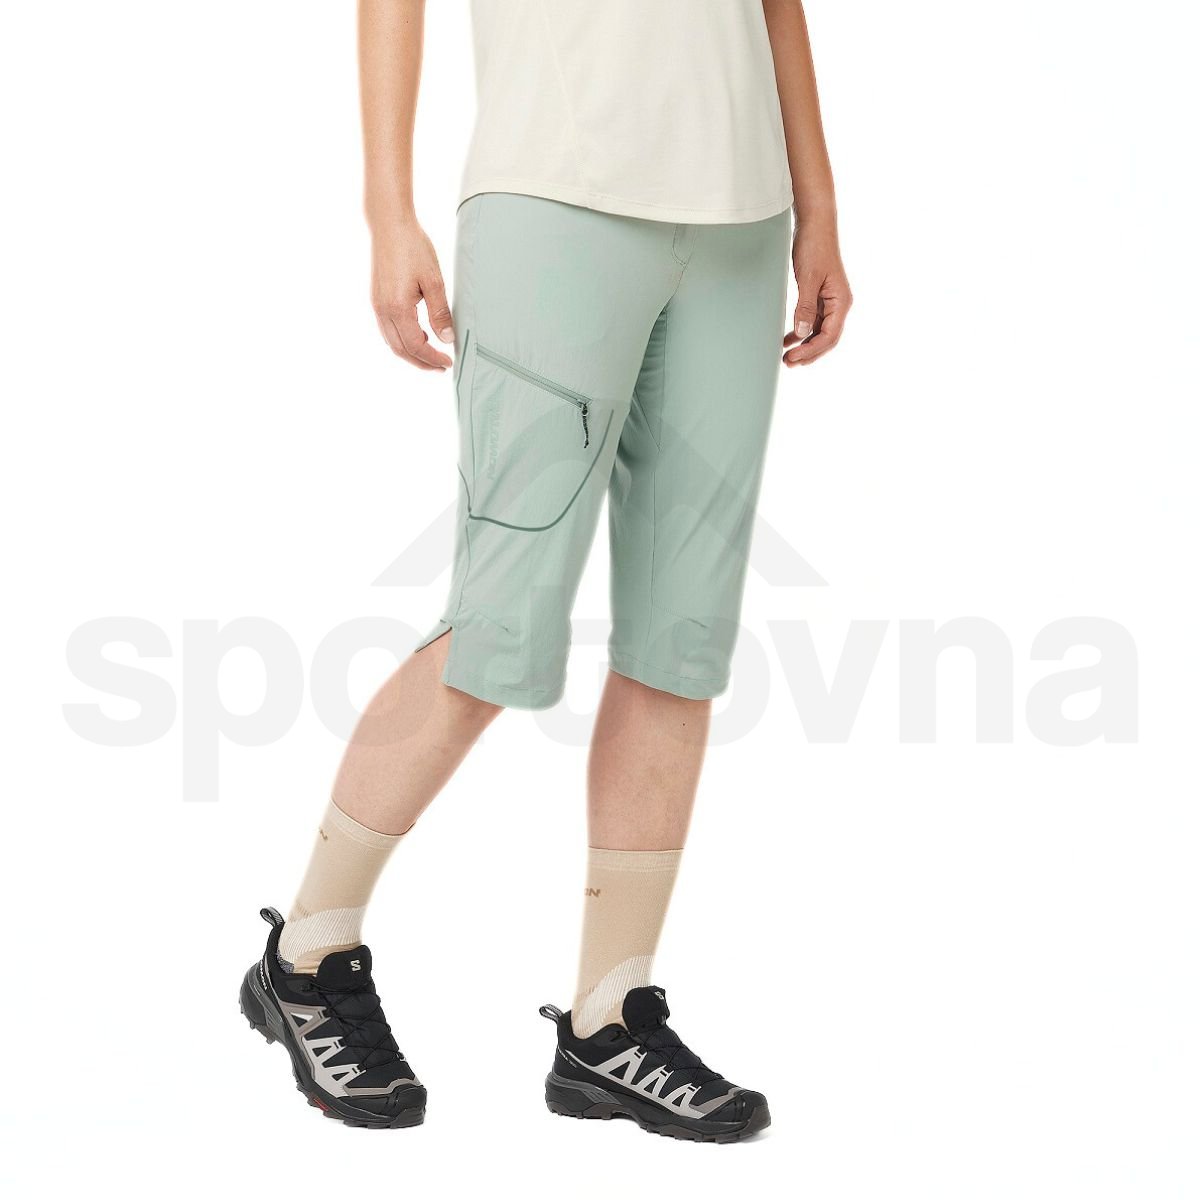 Kalhoty Salomon Wayfarer Capri W - zelená